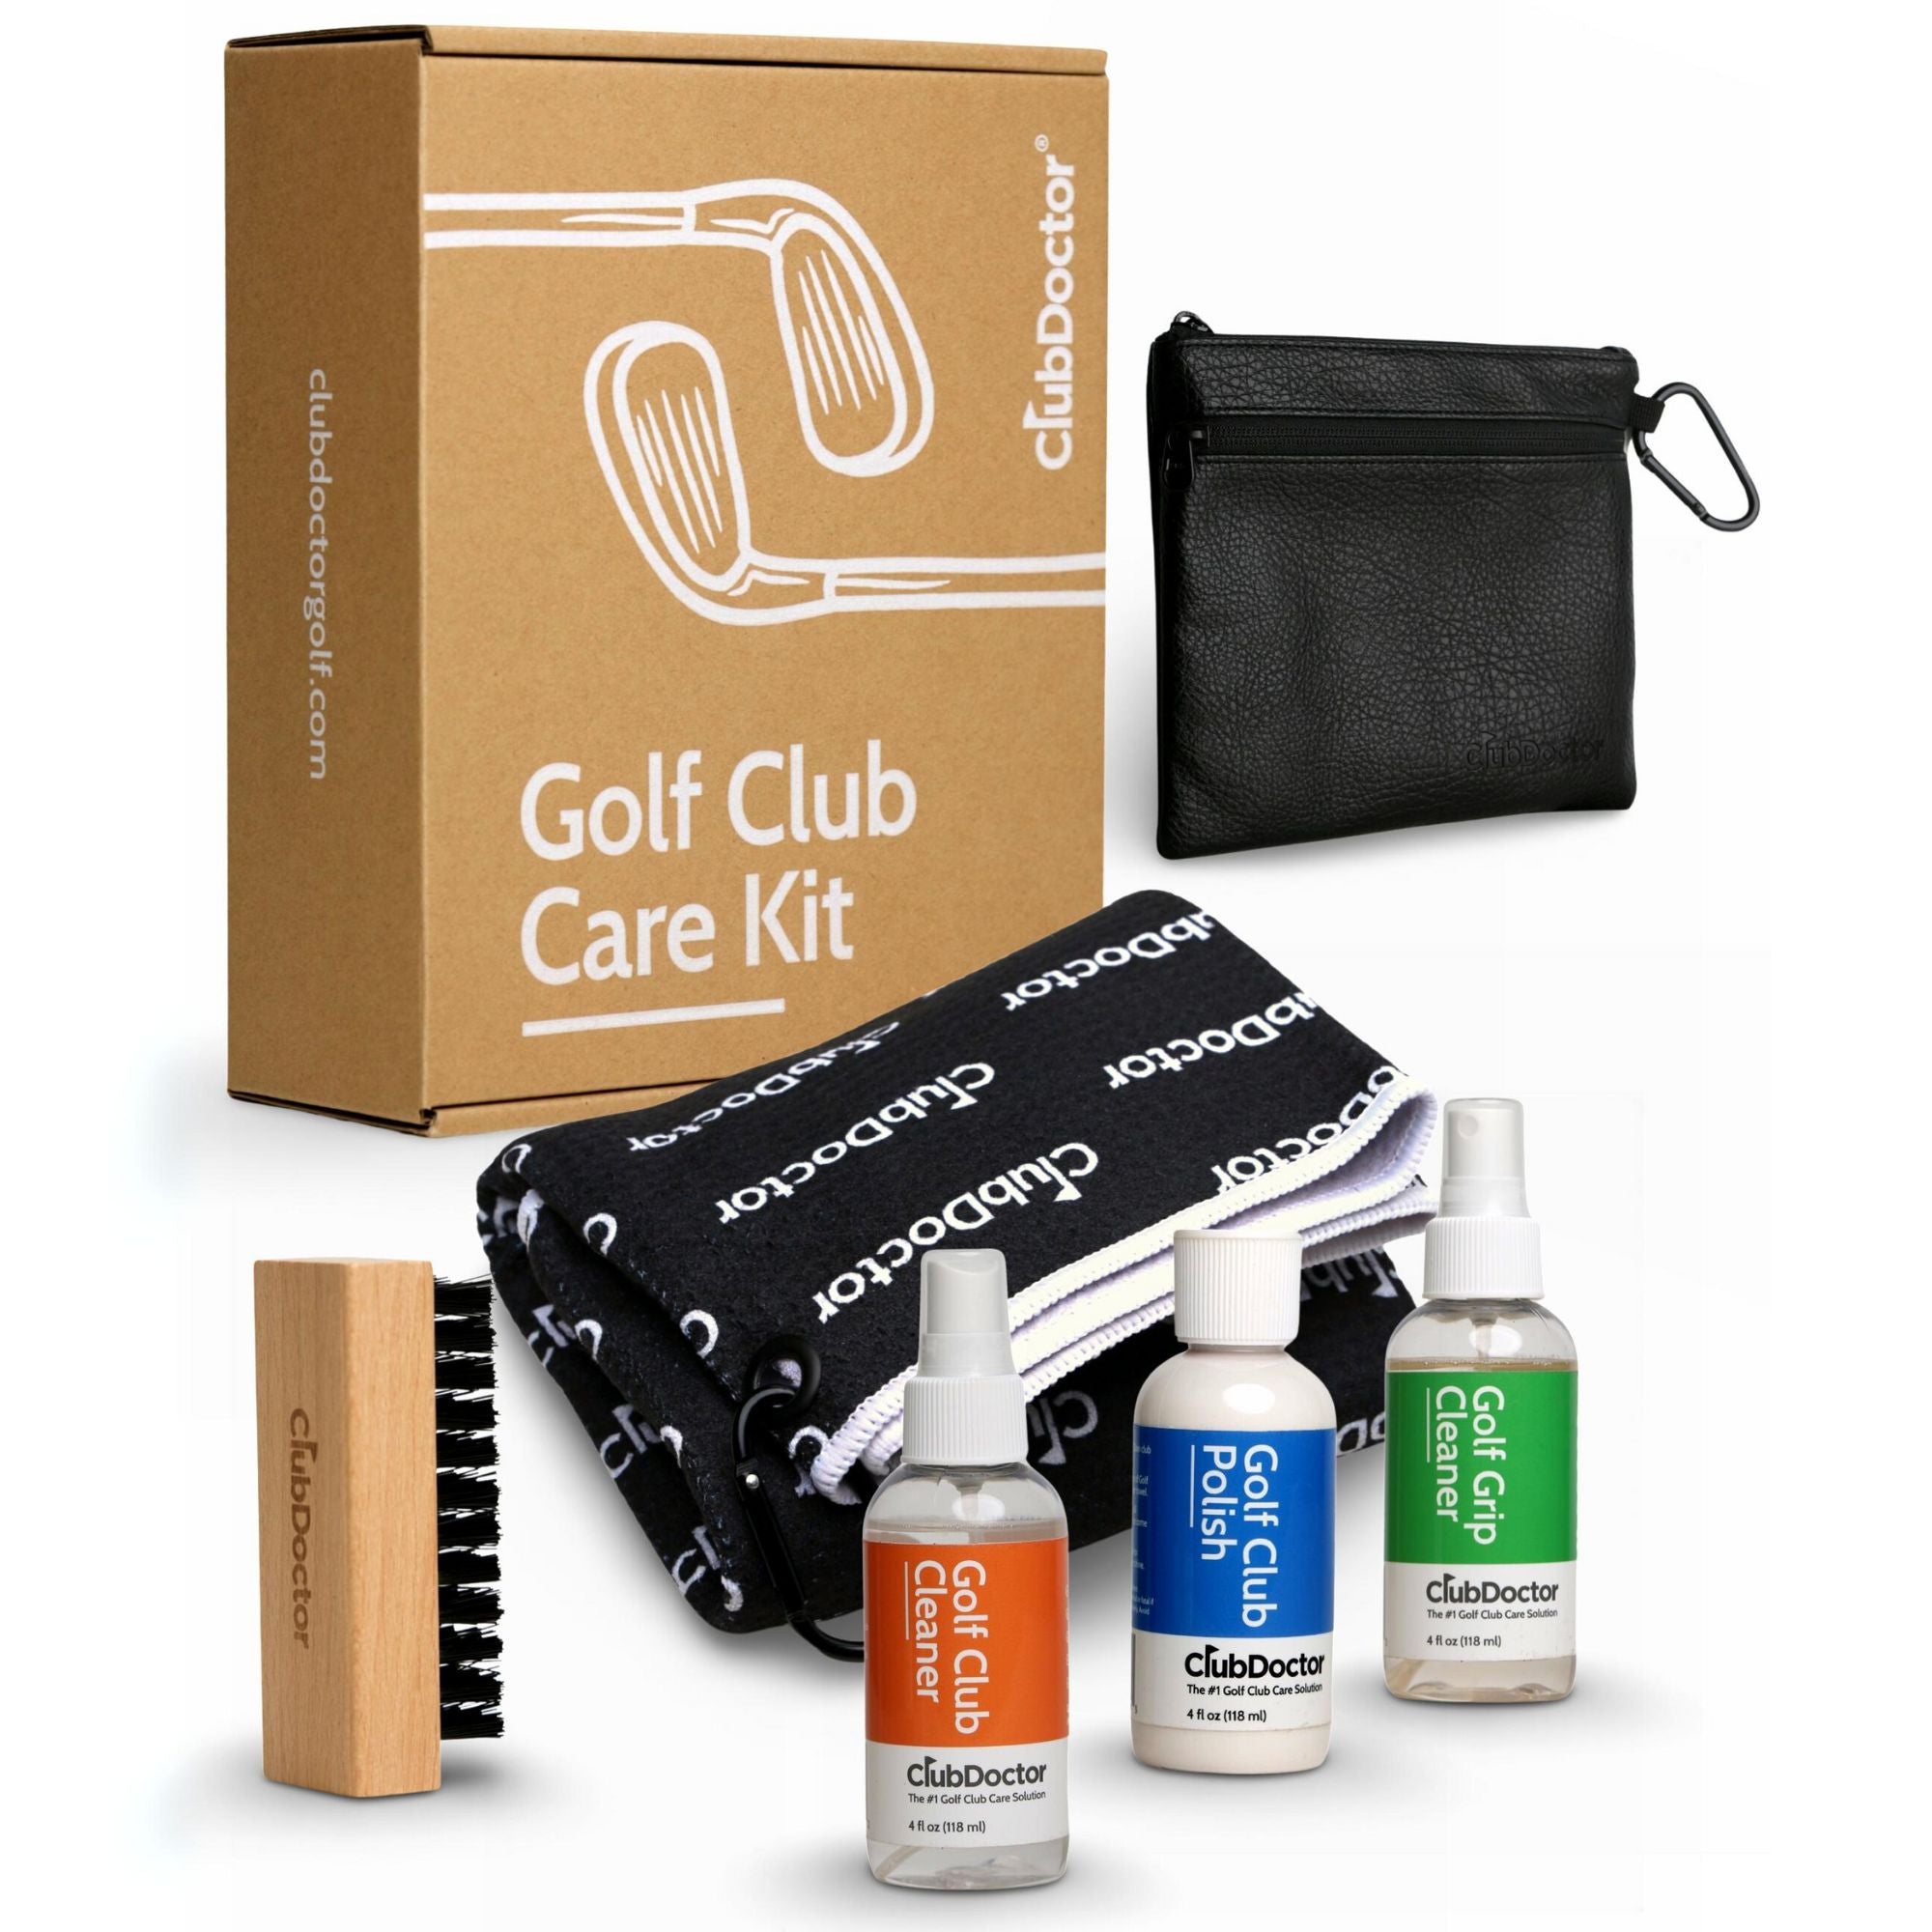 Golf Club Polish Golf Club Cleaner Golf Cleaning Tower Club Cleaner Golf  Club Cleaning Golf Club Polishing Solution Kits Golf Club Polishing Kits  Golf